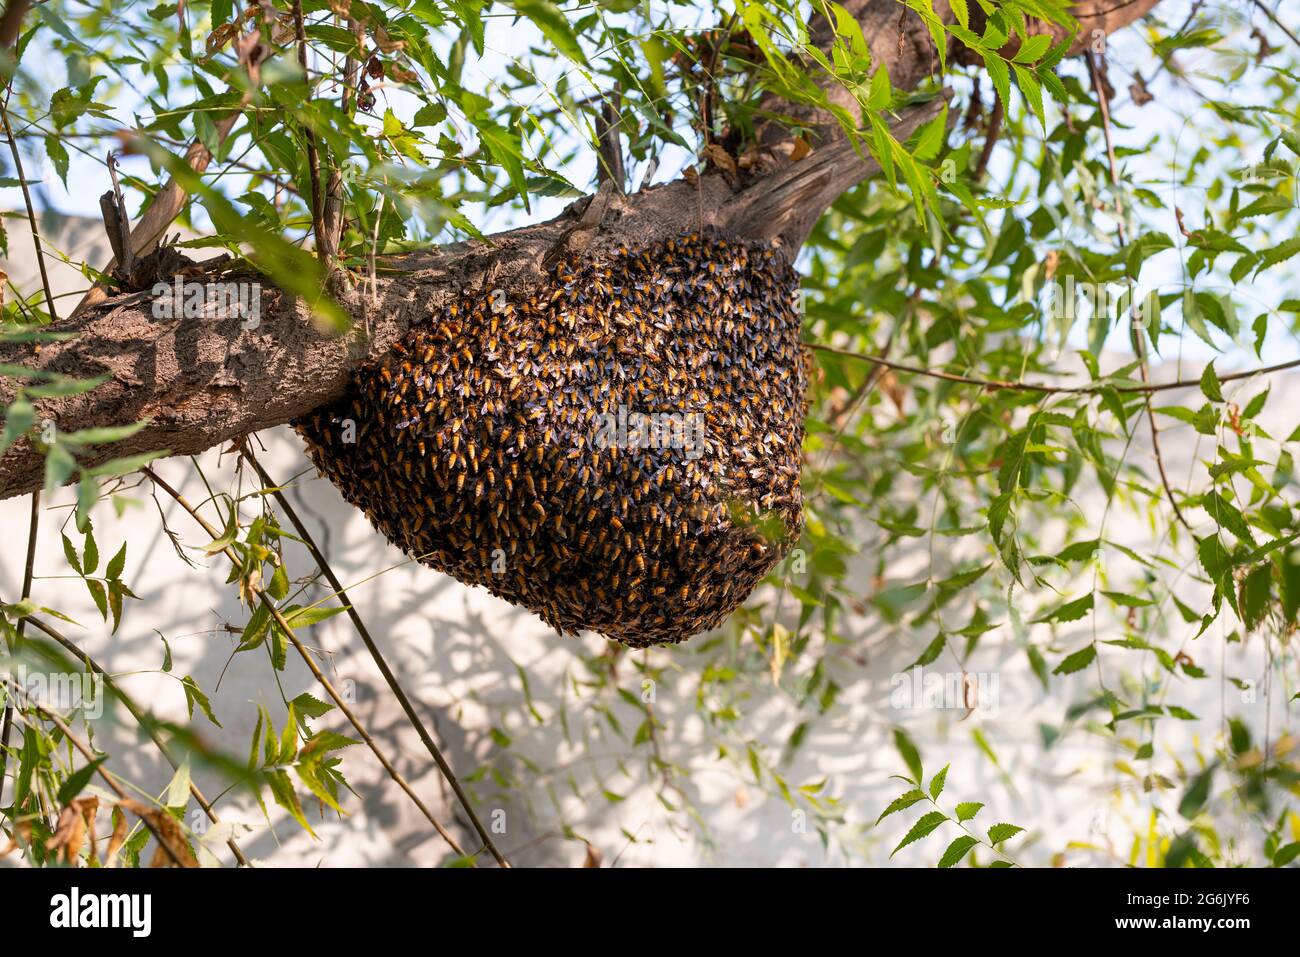 Enjambre de abeja que cuelga del árbol, Enjambre de abejas construyendo una nueva colmena que rodea el árbol. Foto de stock